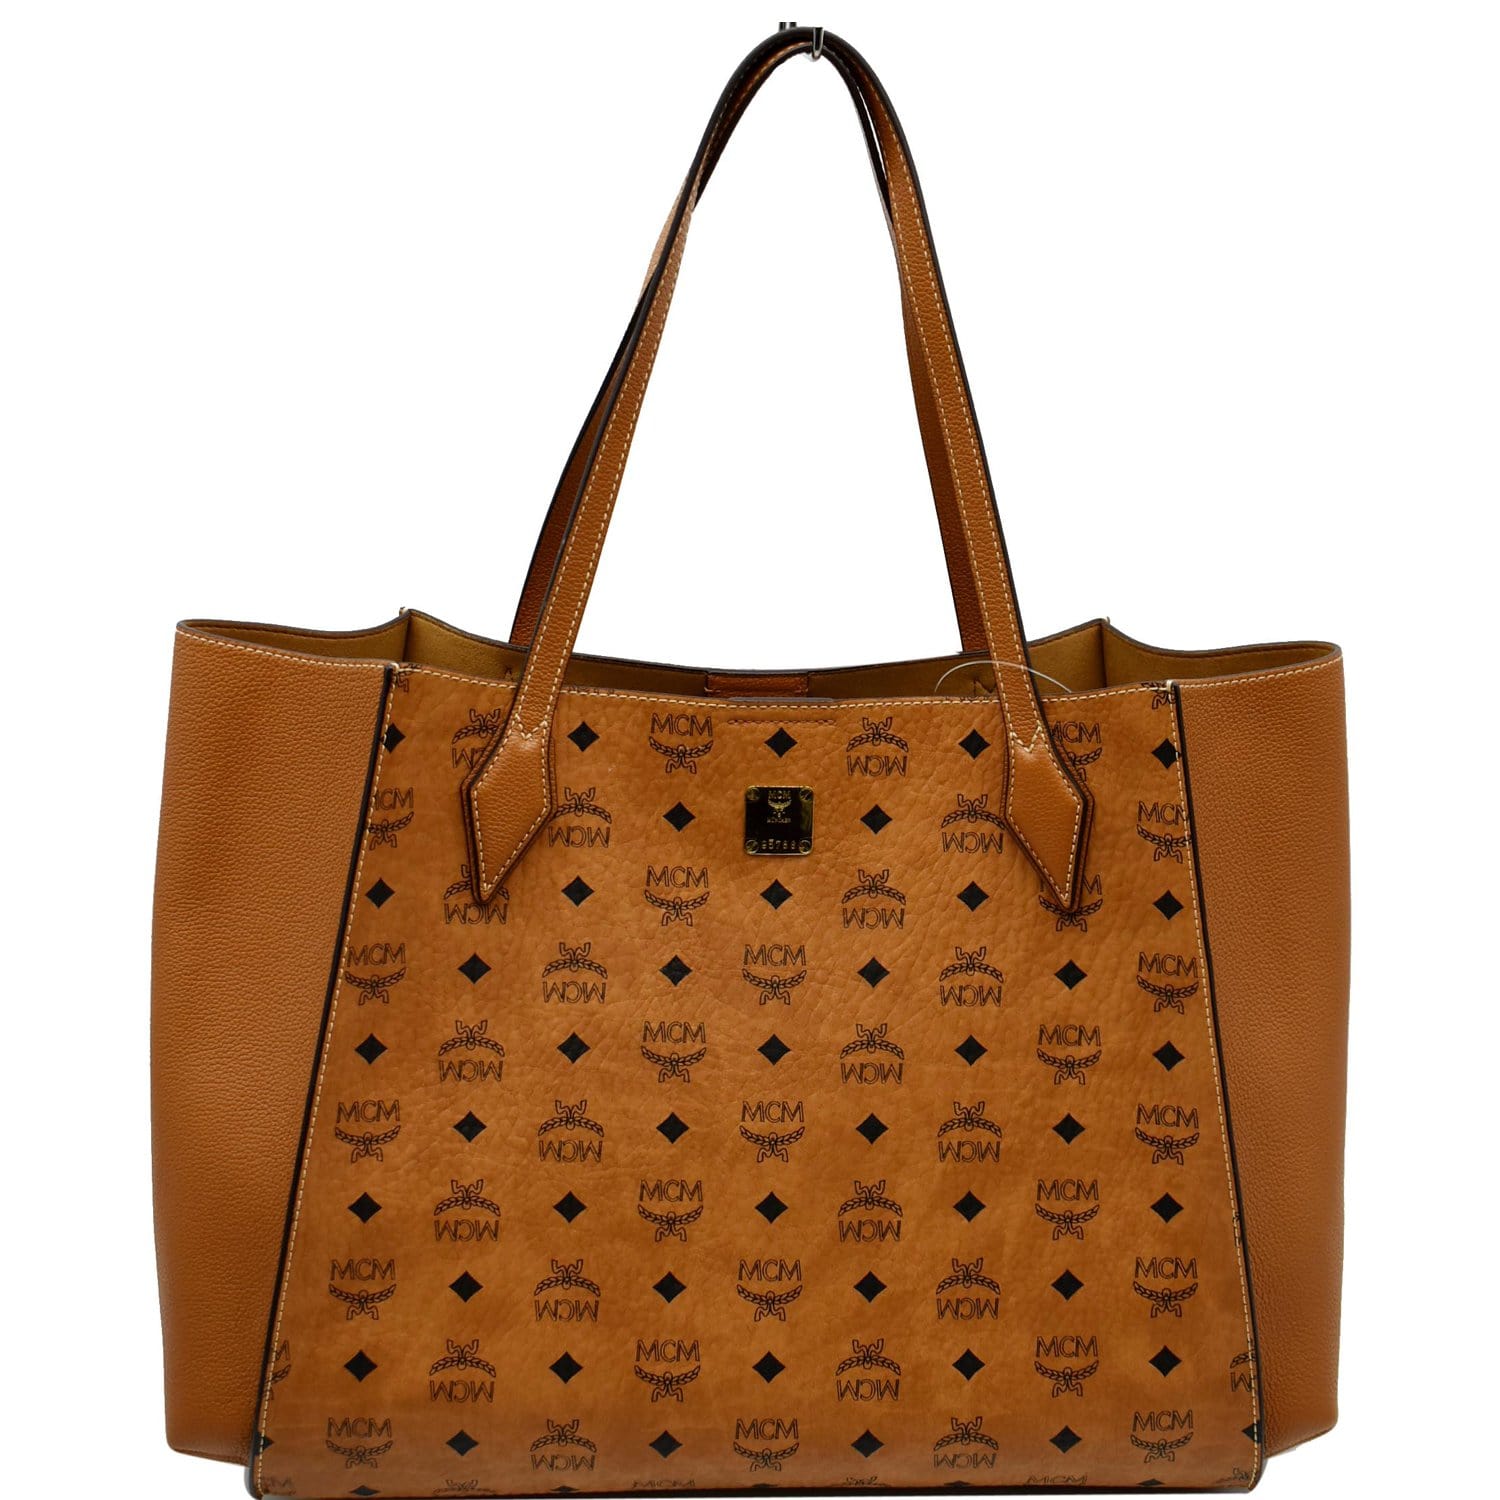 Bag, $1850 at luisaviaroma.com - Wheretoget